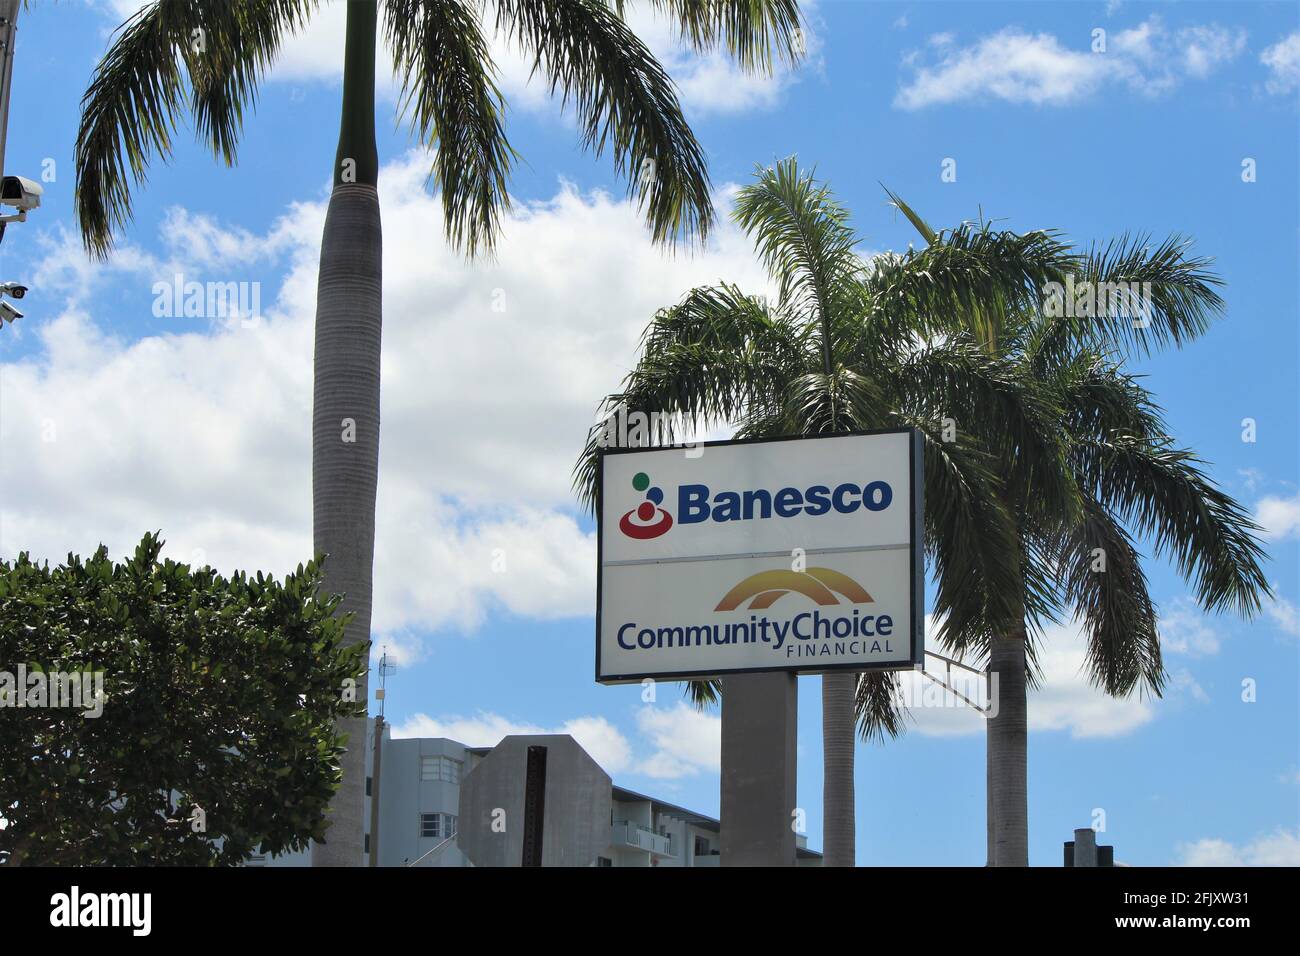 Insegne per Banesco Banco Universal che è un istituto di banca finanziaria venezuelana e la scelta finanziaria della Comunità a Hialeah, FL. Foto Stock